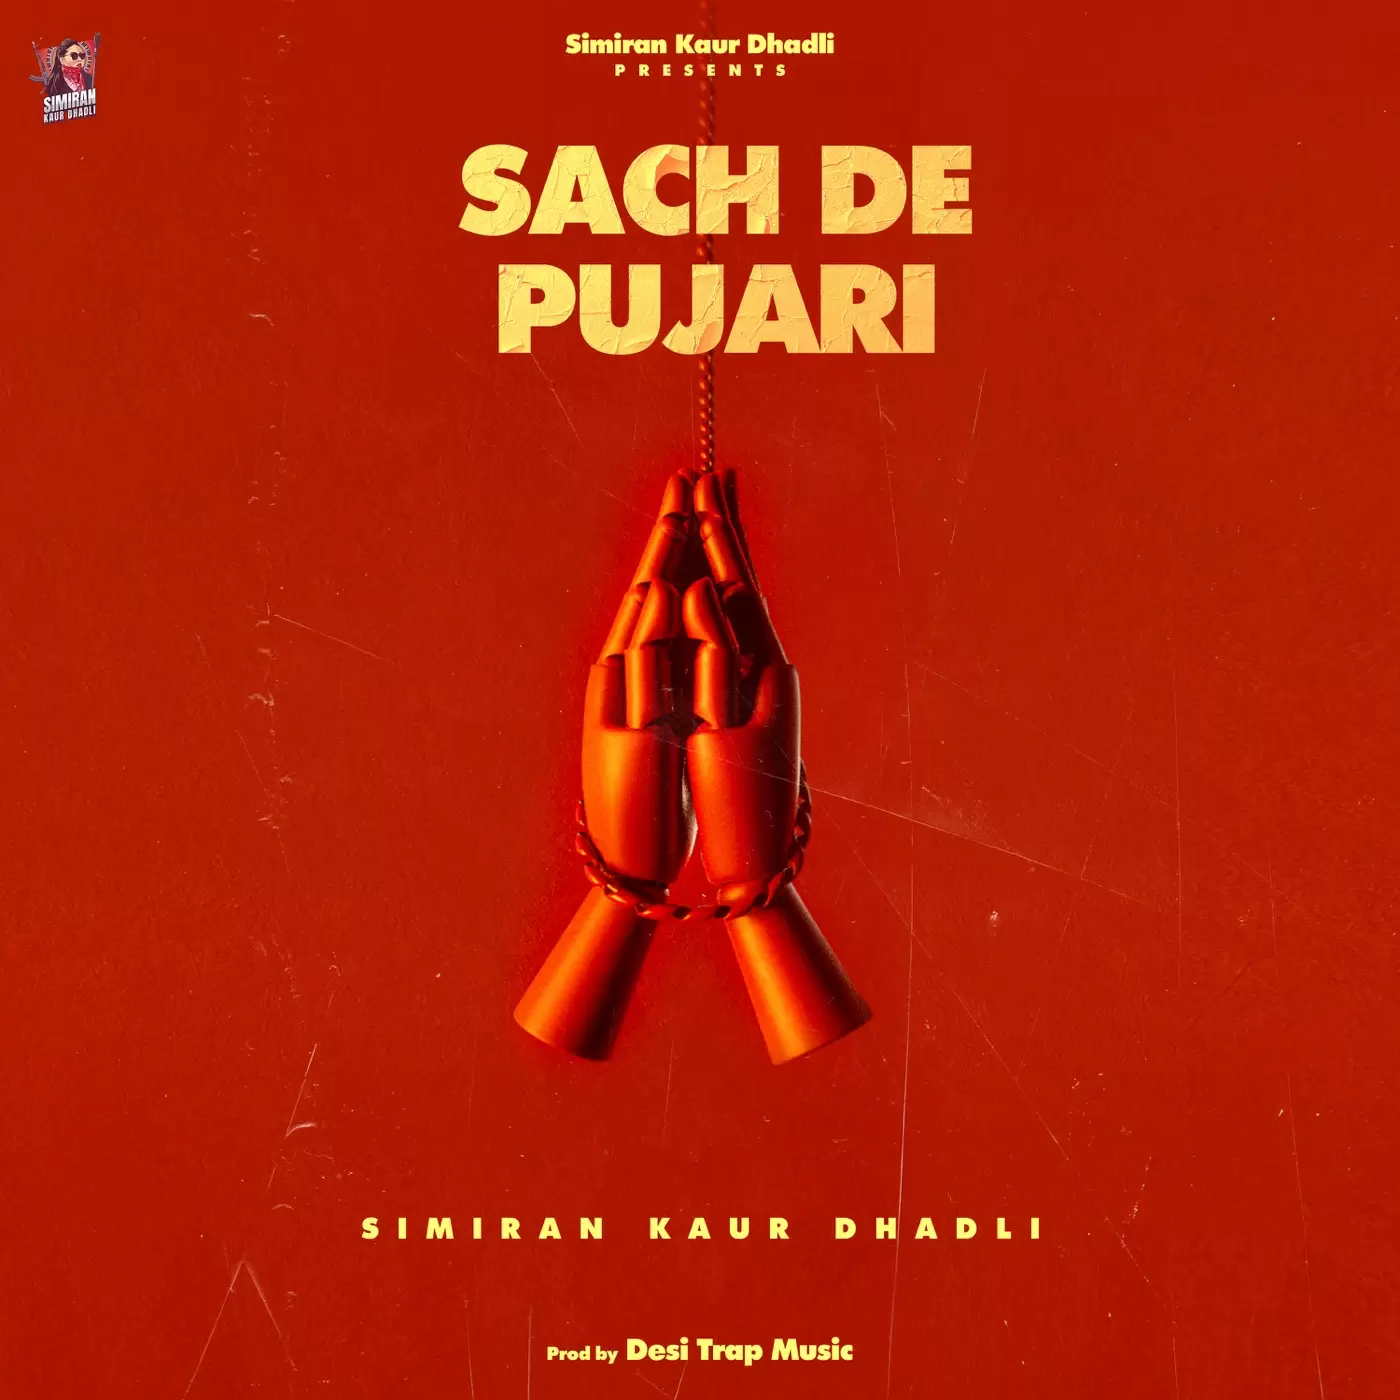 Sach De Pujari Simiran Kaur Dhadli Mp3 Download Song - Mr-Punjab